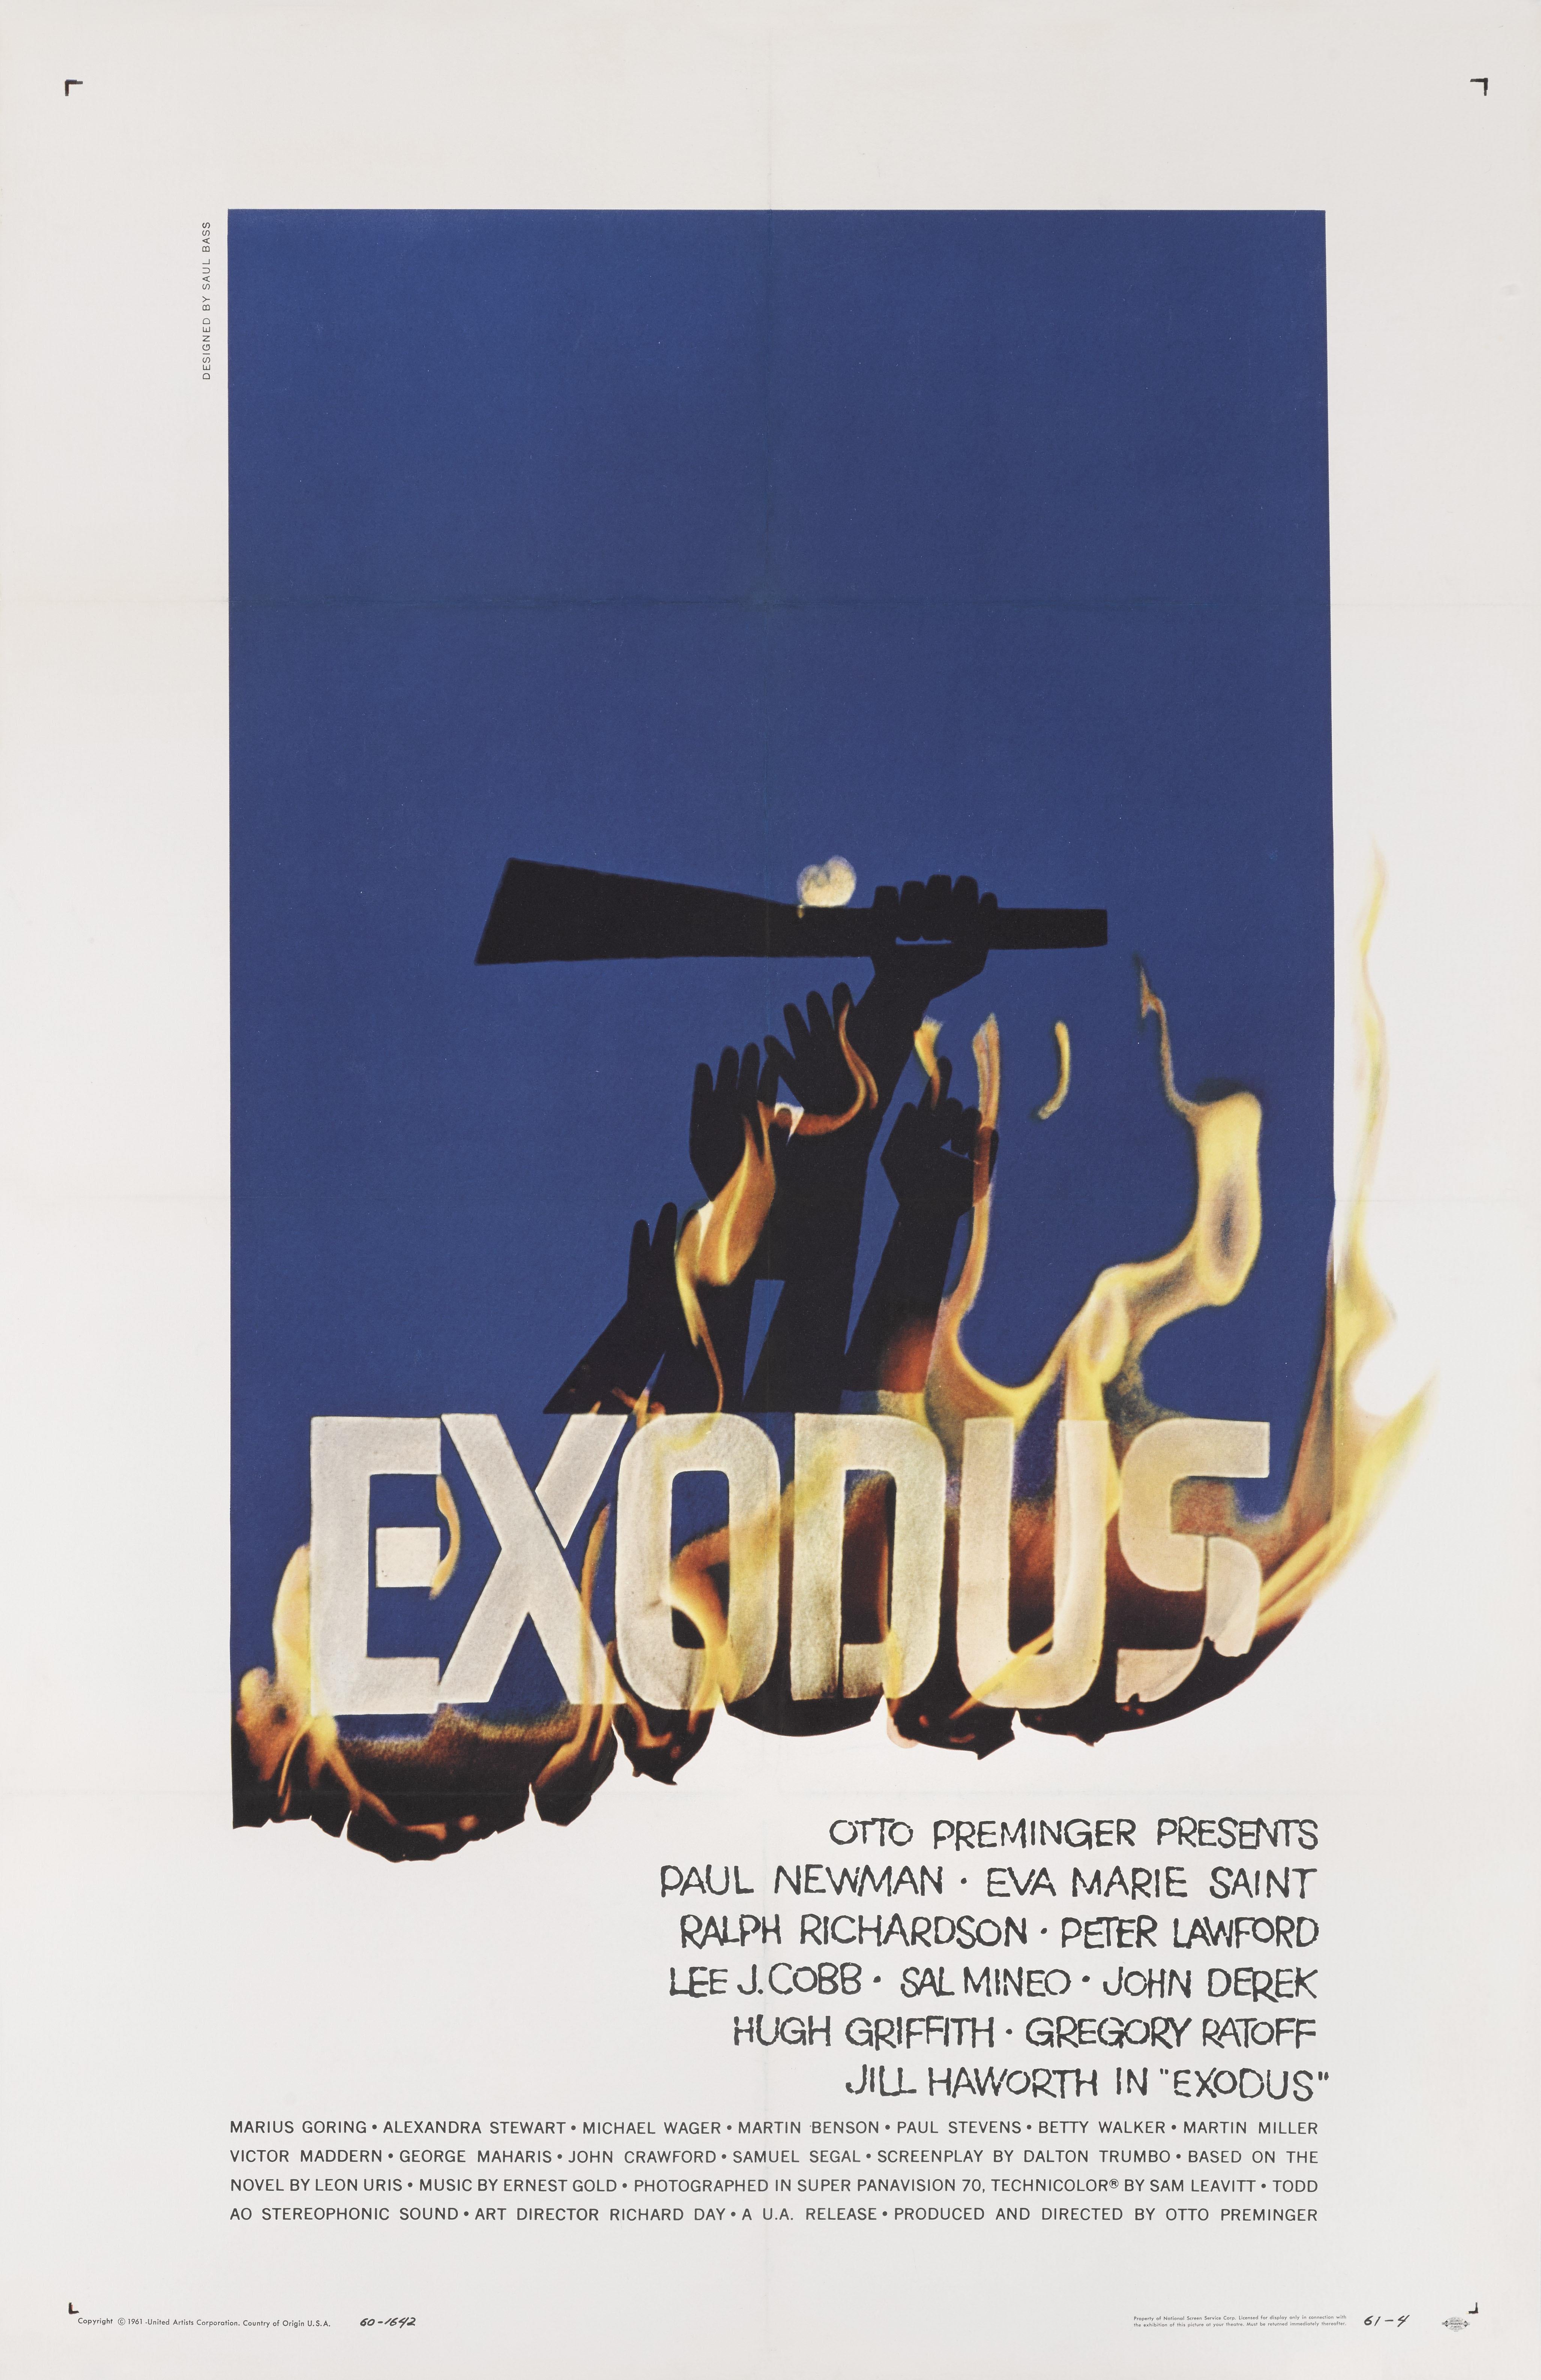 Original US-Filmplakat für Otto Premingers Drama von 1960 unter der Regie von Paul Newman.
Das Kunstwerk stammt von dem legendären amerikanischen Grafiker Saul Bass (1920-1996).
Dieses Plakat ist mit einem Leinenrücken versehen und wird aufgerollt